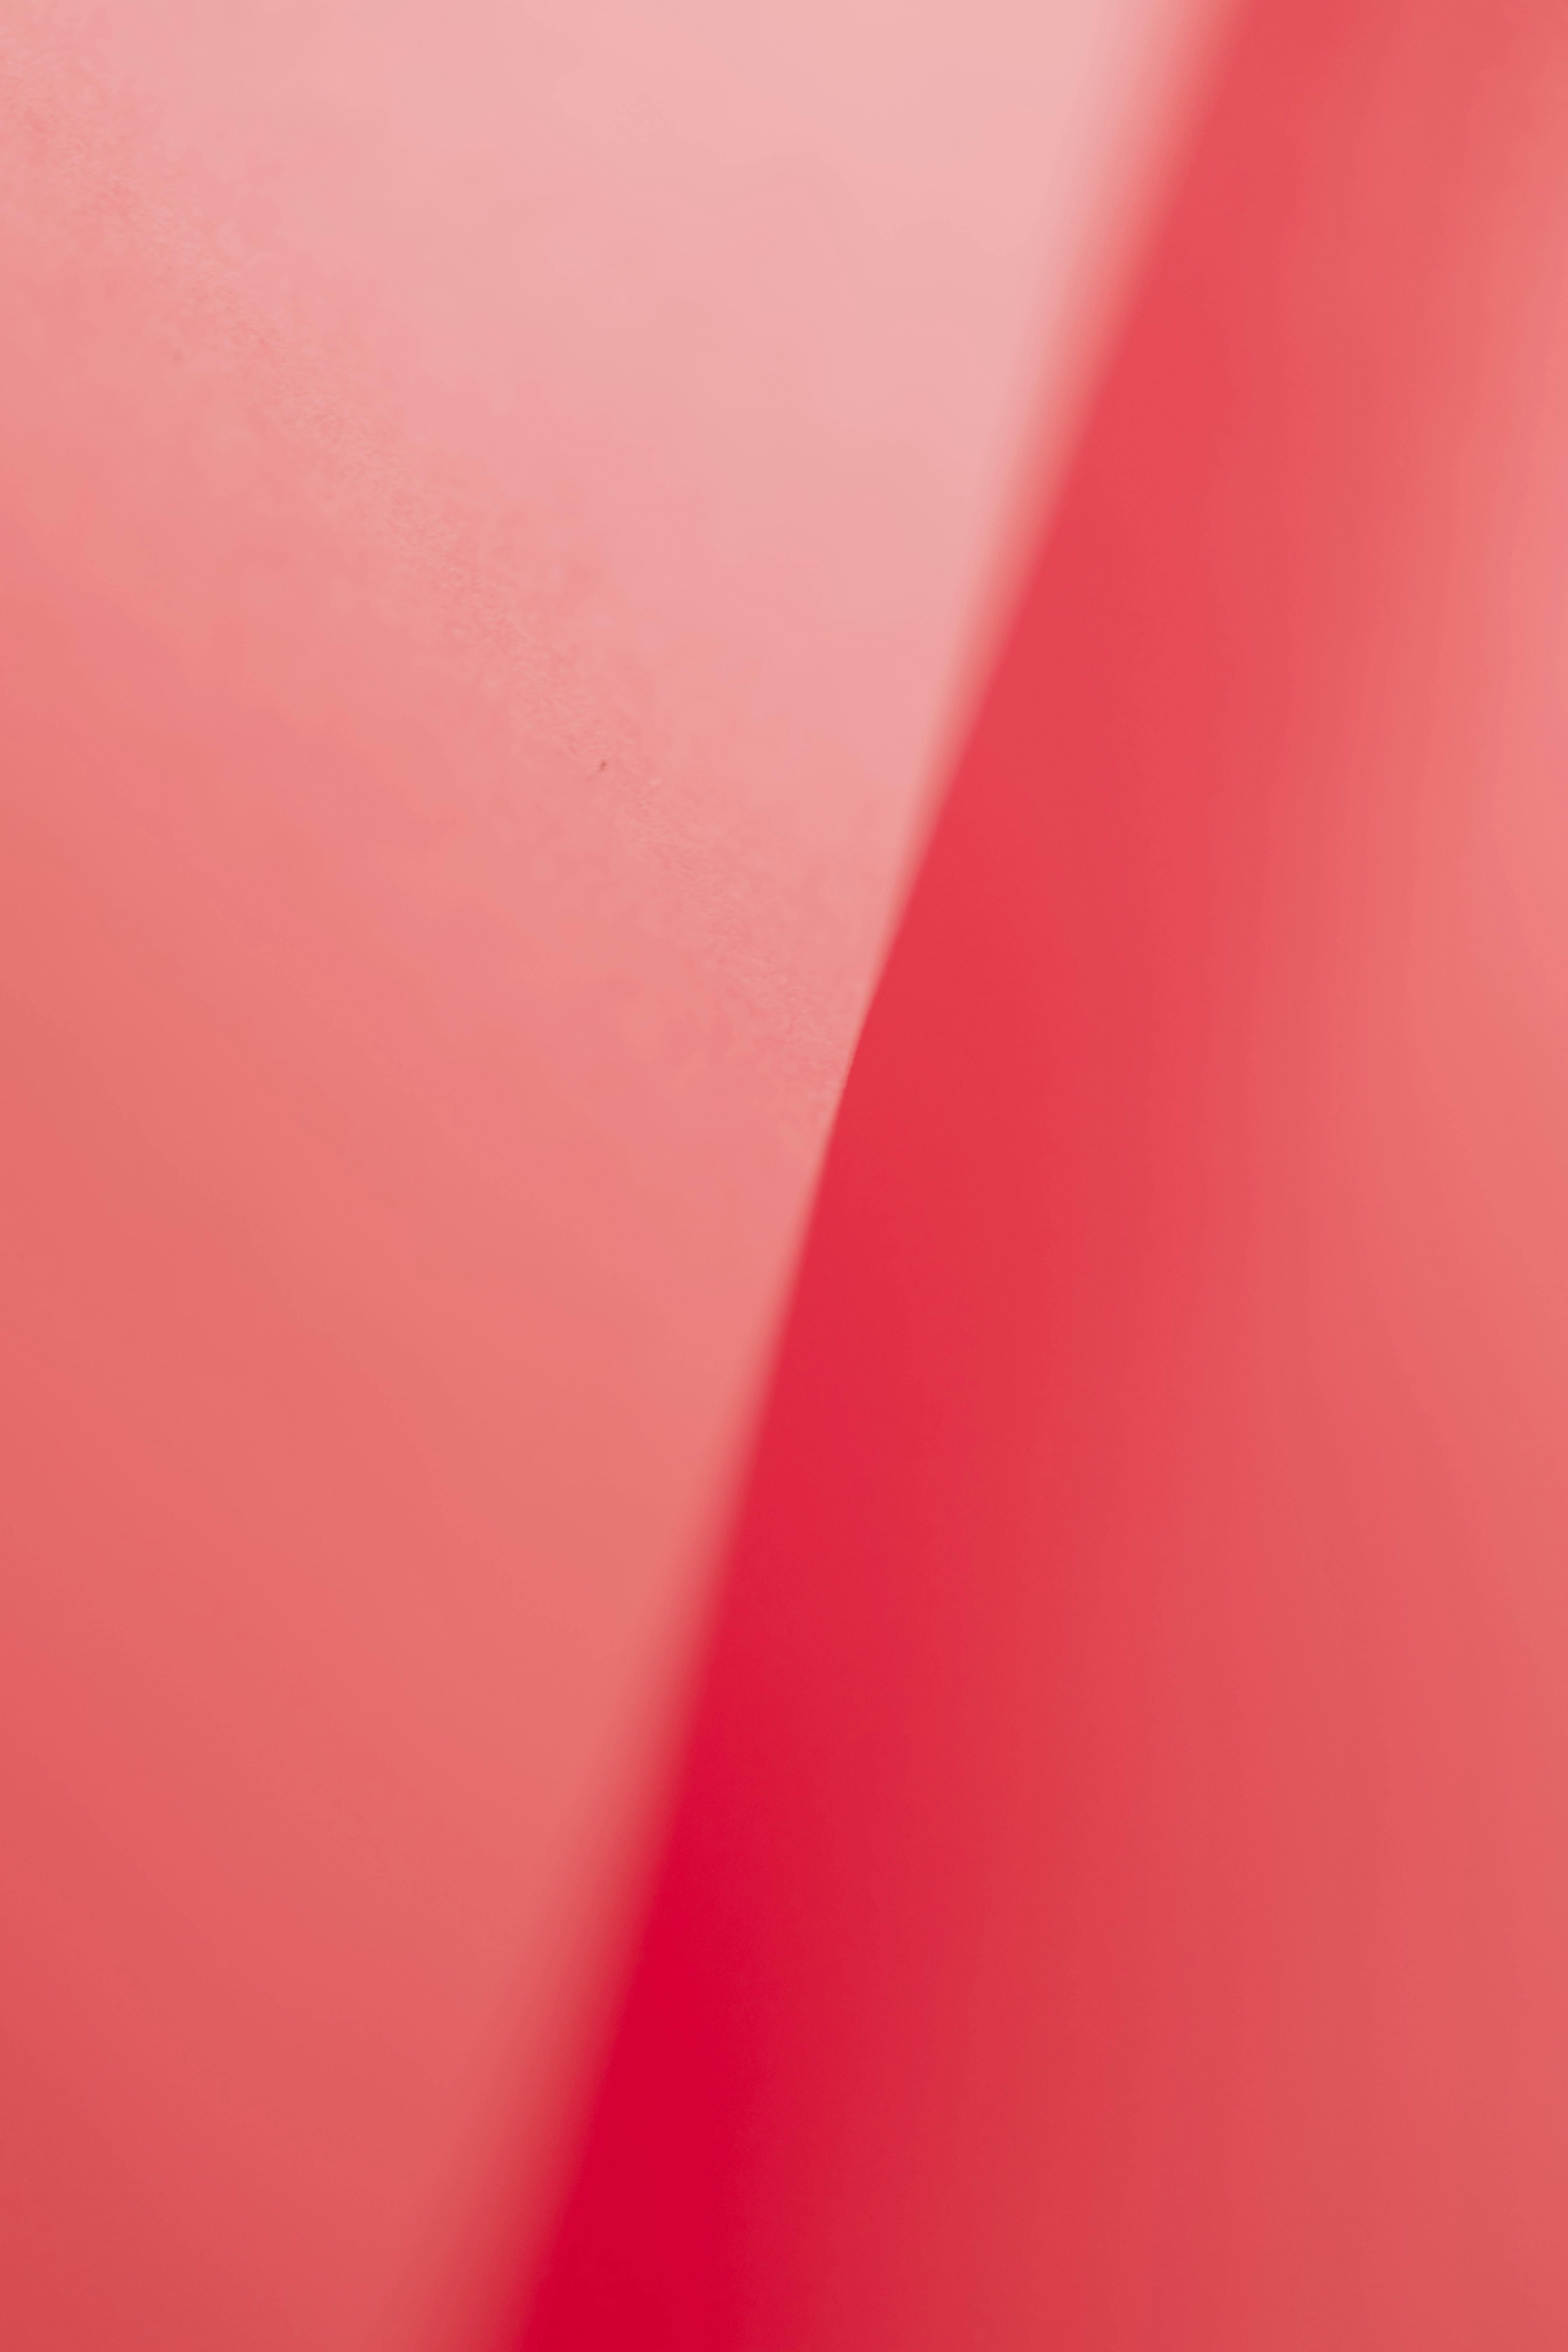 Những tông màu hồng đậm, nhạt hay pha lẫn cùng màu trắng sẽ mang lại cho bạn một không gian làm việc hoàn hảo với hình nền chủ đề màu hồng. Hình nền này sẽ giúp bạn tràn đầy năng lượng, tín đồ thời trang sẽ thích thú với sự sáng tạo của bạn.